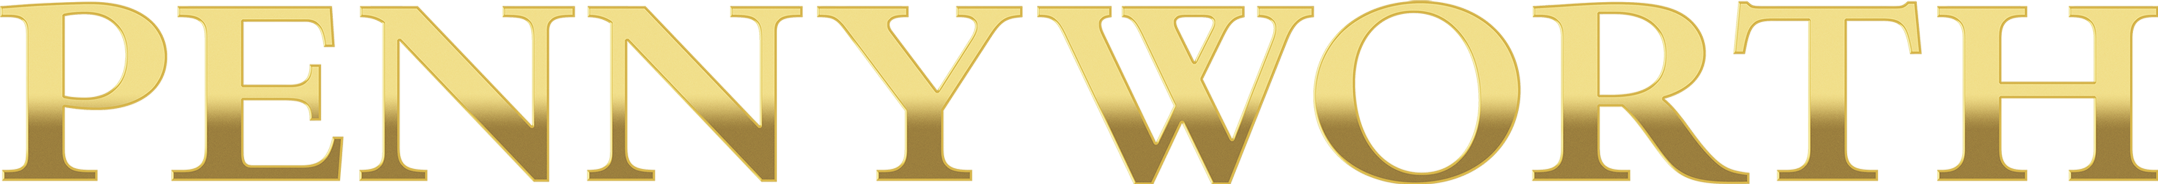 Il logo della serie televisiva Pennyworth